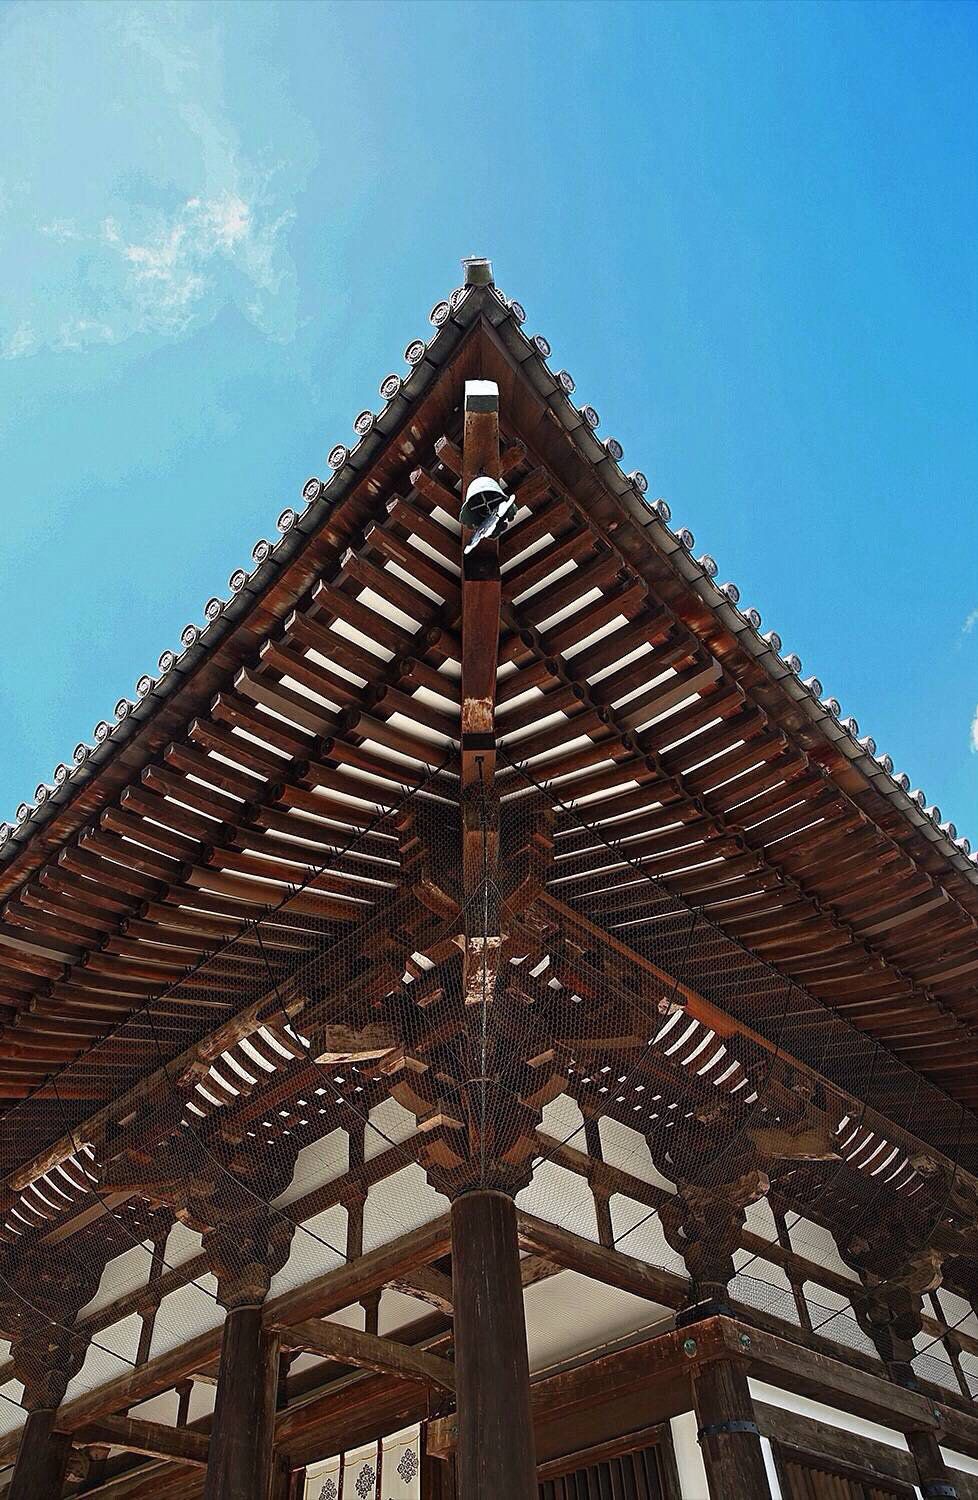 这座寺庙是中国唐代高僧鉴真和尚亲手兴建的盛唐建筑风格寺院,被